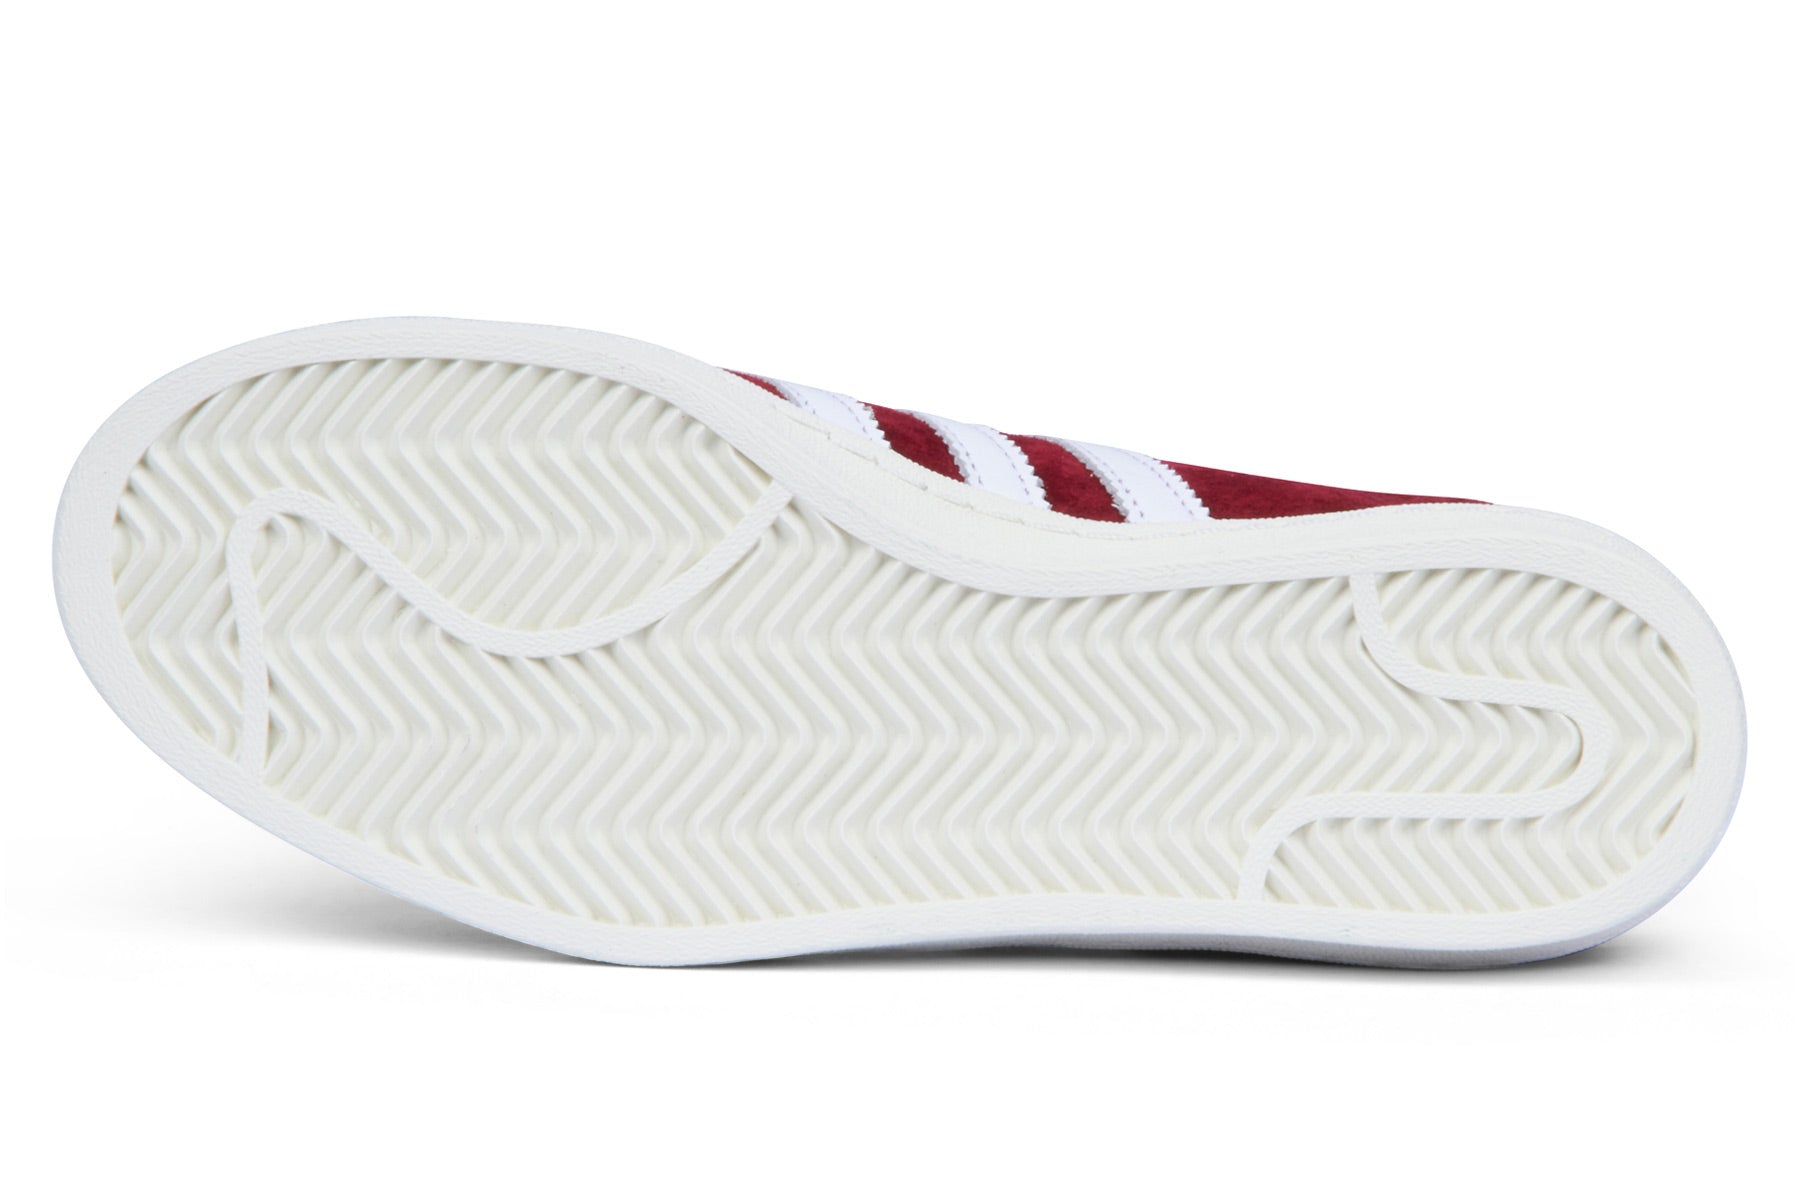 Adidas Campus 80s - Collegiate Burgundy/Footwear White/Chalk White